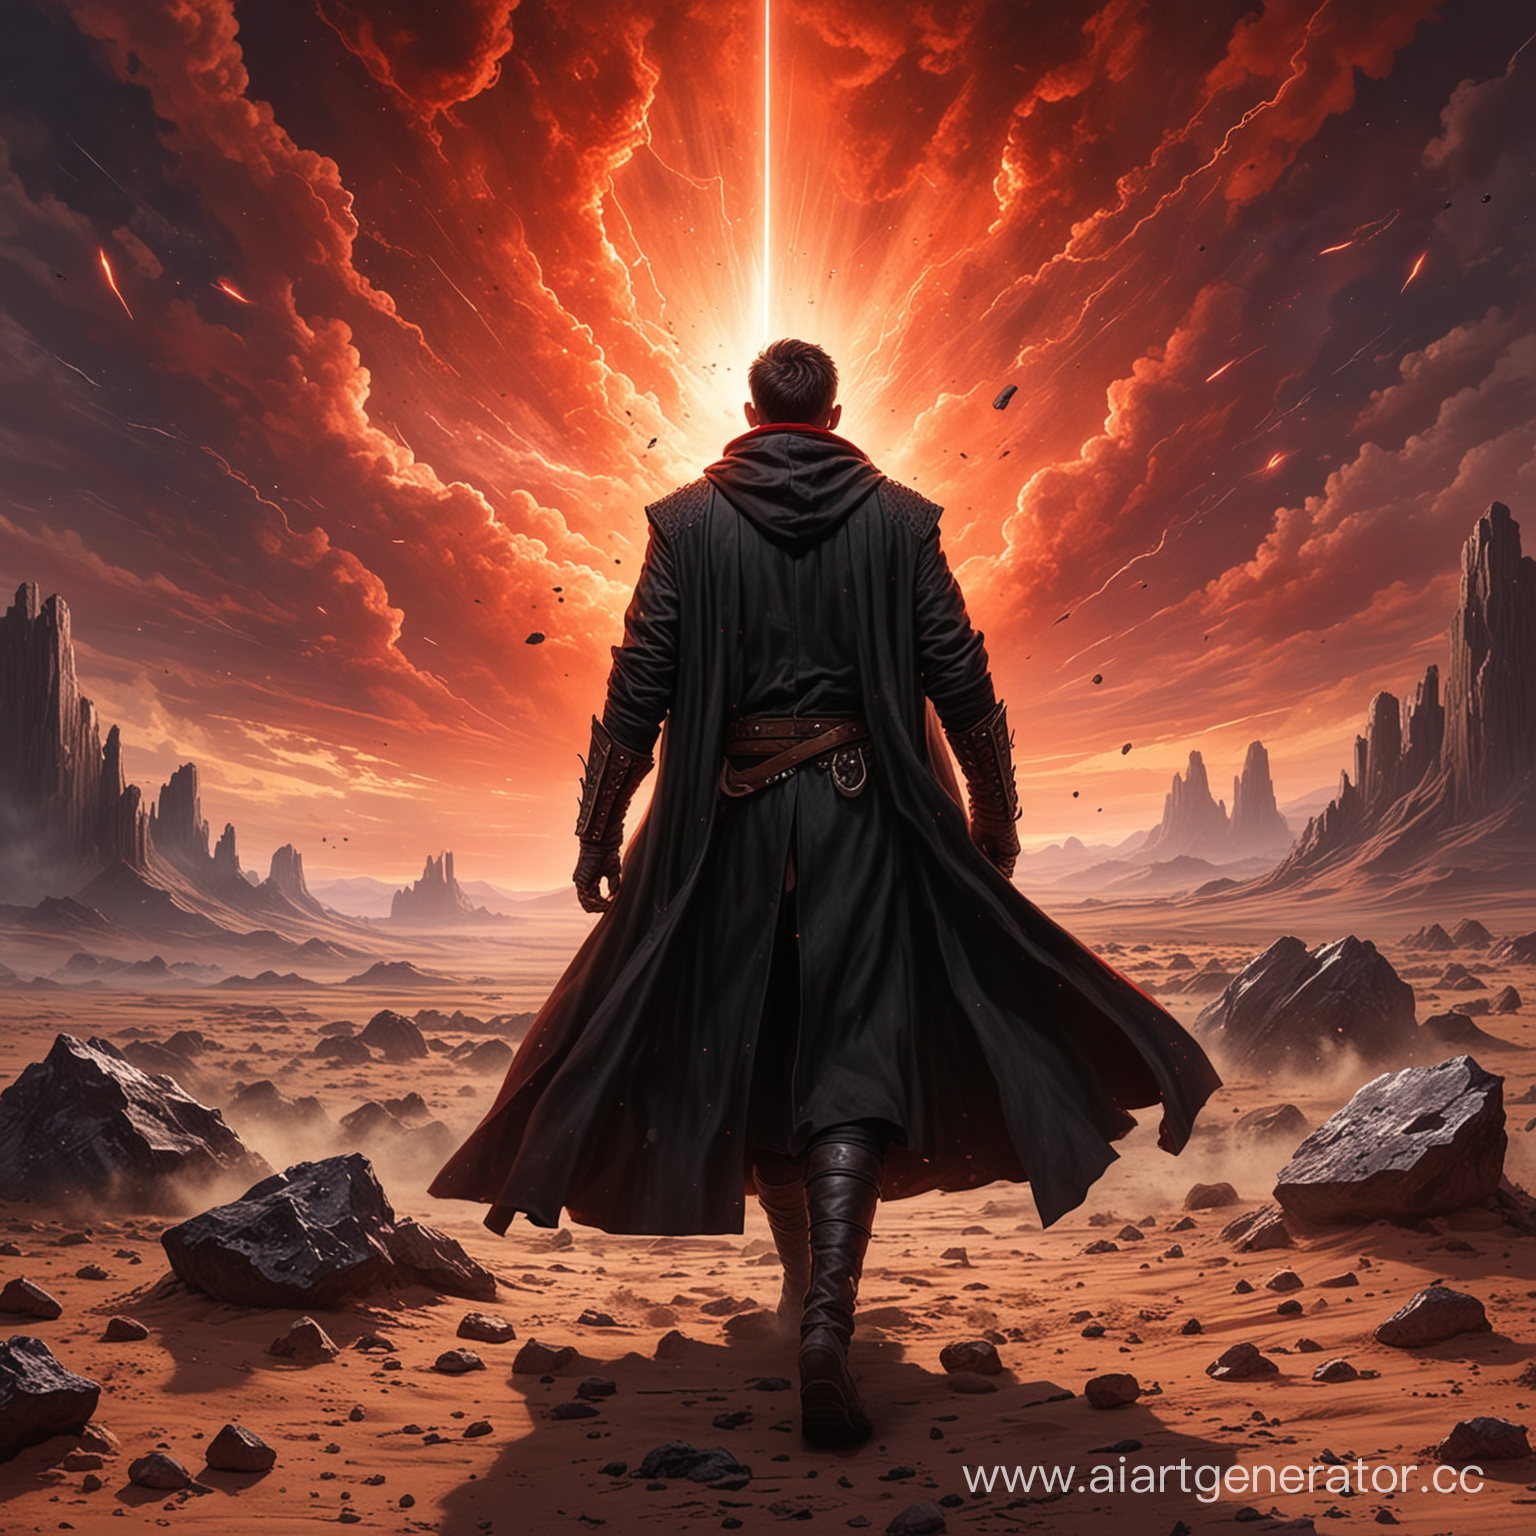 герой использующий магию в длинном черном средневековом пальто создал магический барьер вокруг себя об который ударяются метеориты, действия происходит в пустыне темные облака и небо красное